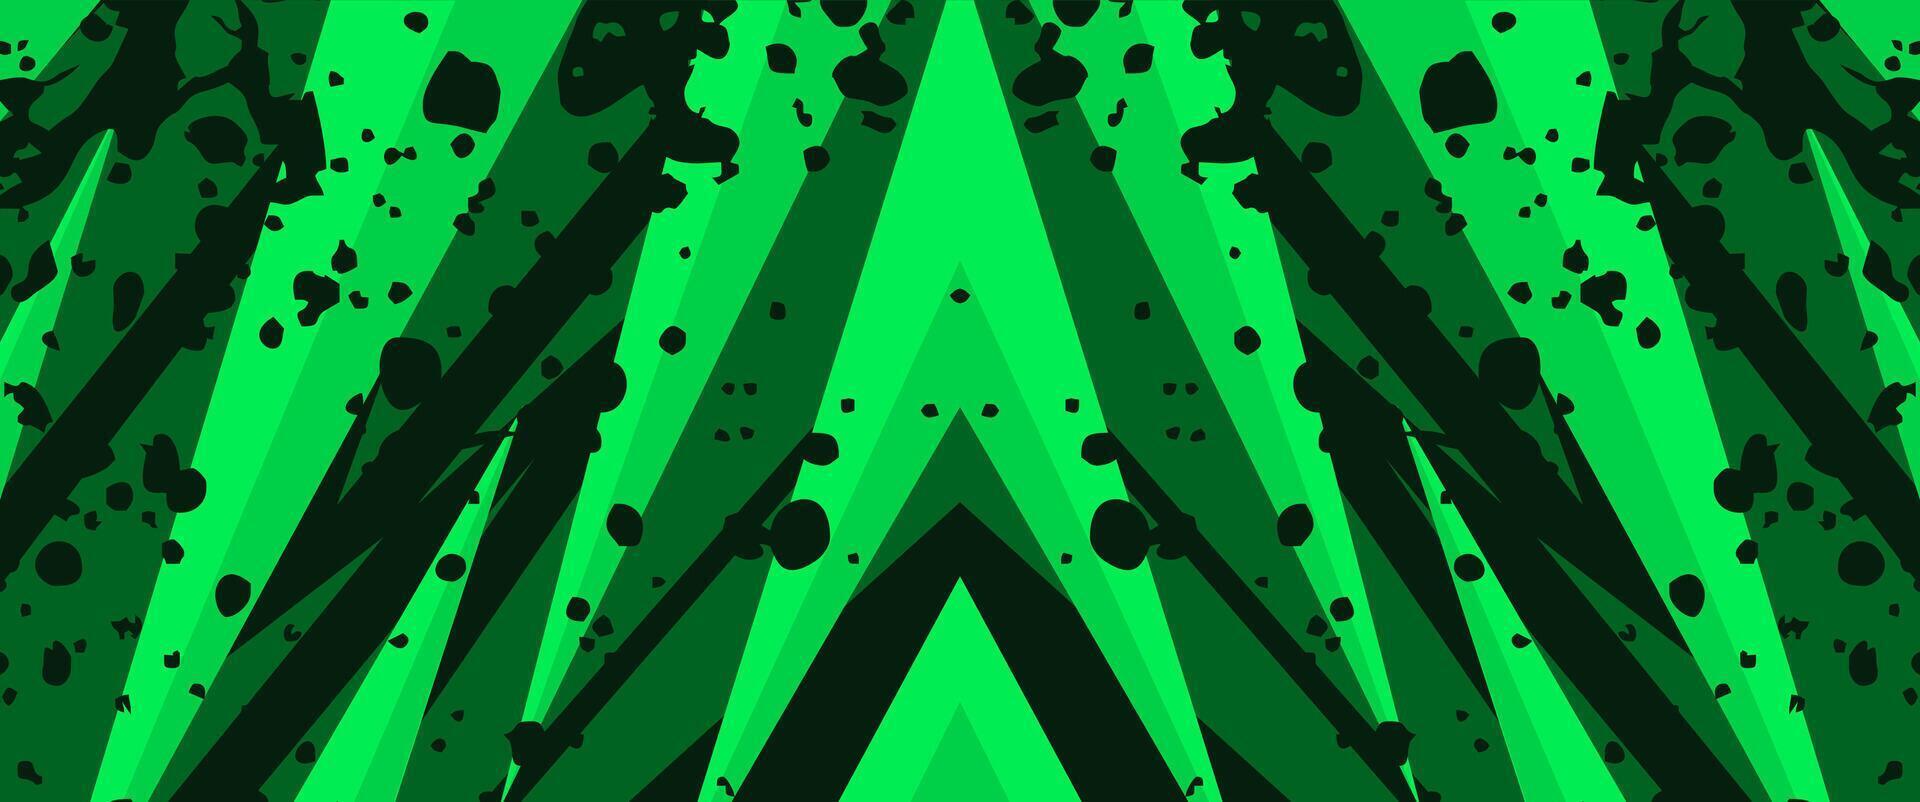 sportlich Grün abstrakt Hintergrund mit Lärm Textur und Streifen zum Sport, Rennen, Spielen Thema Designs vektor